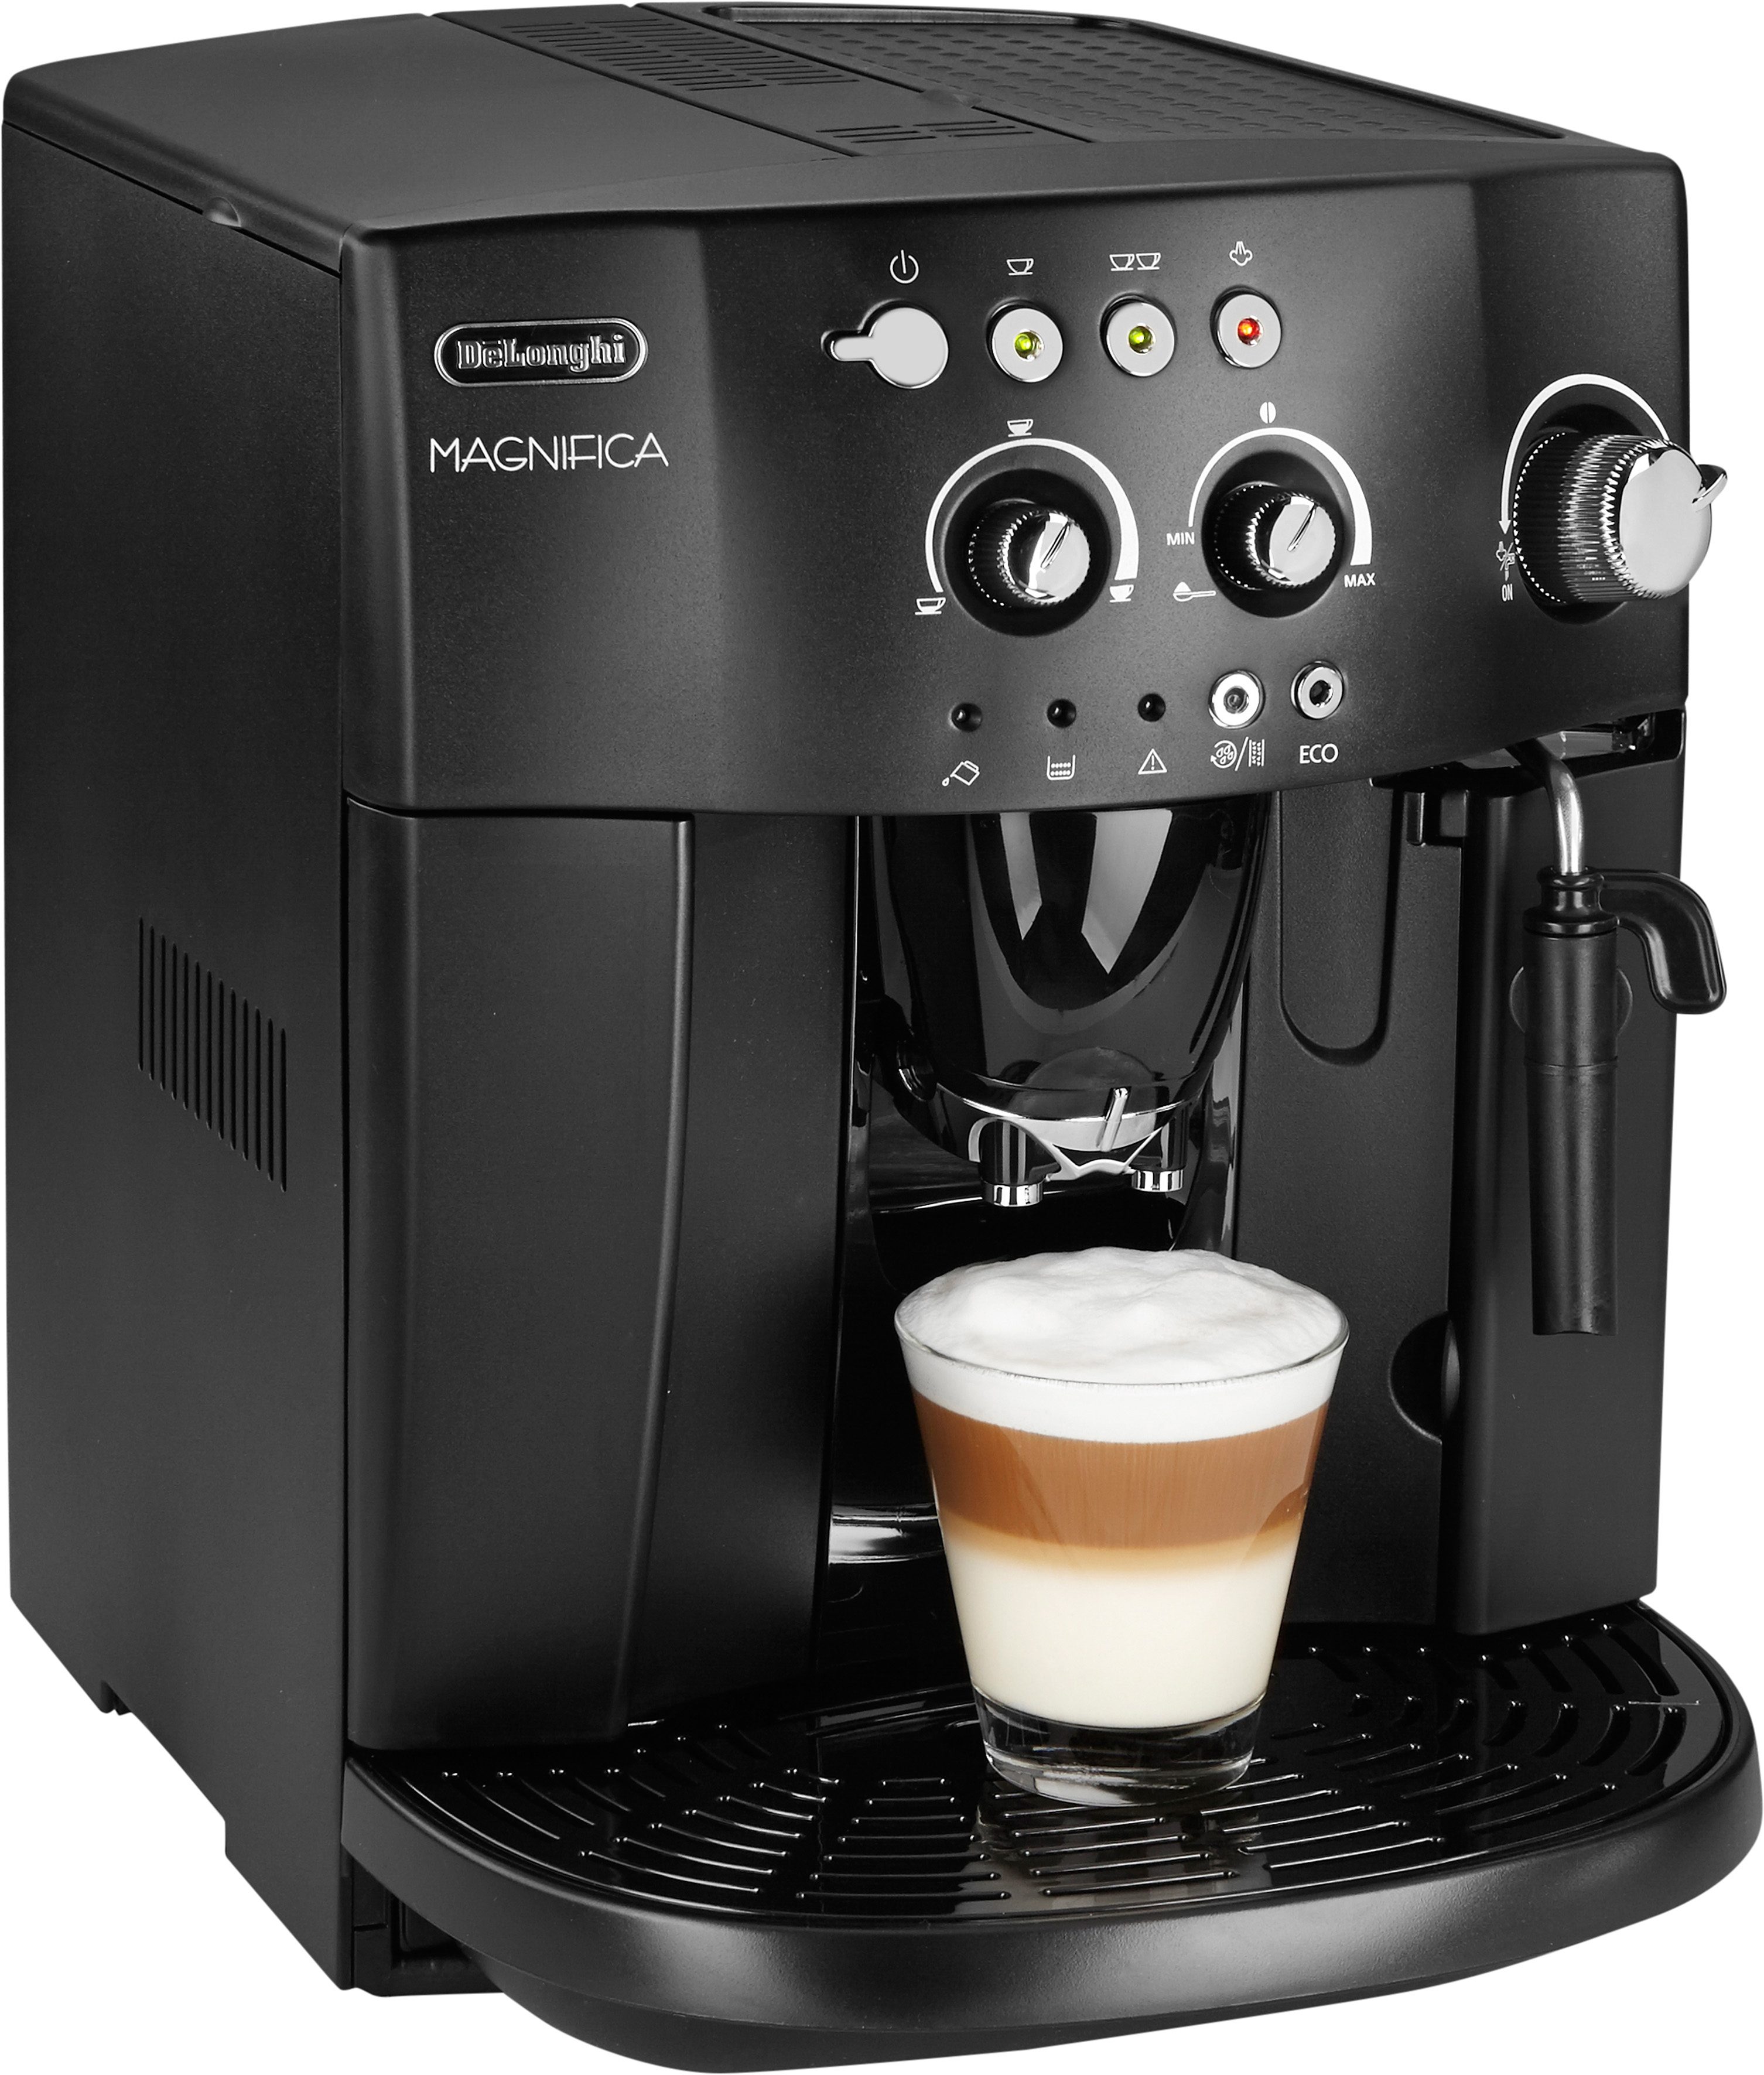 De'Longhi Volautomatisch koffiezetapparaat Magnifica 4008 online bestellen | OTTO